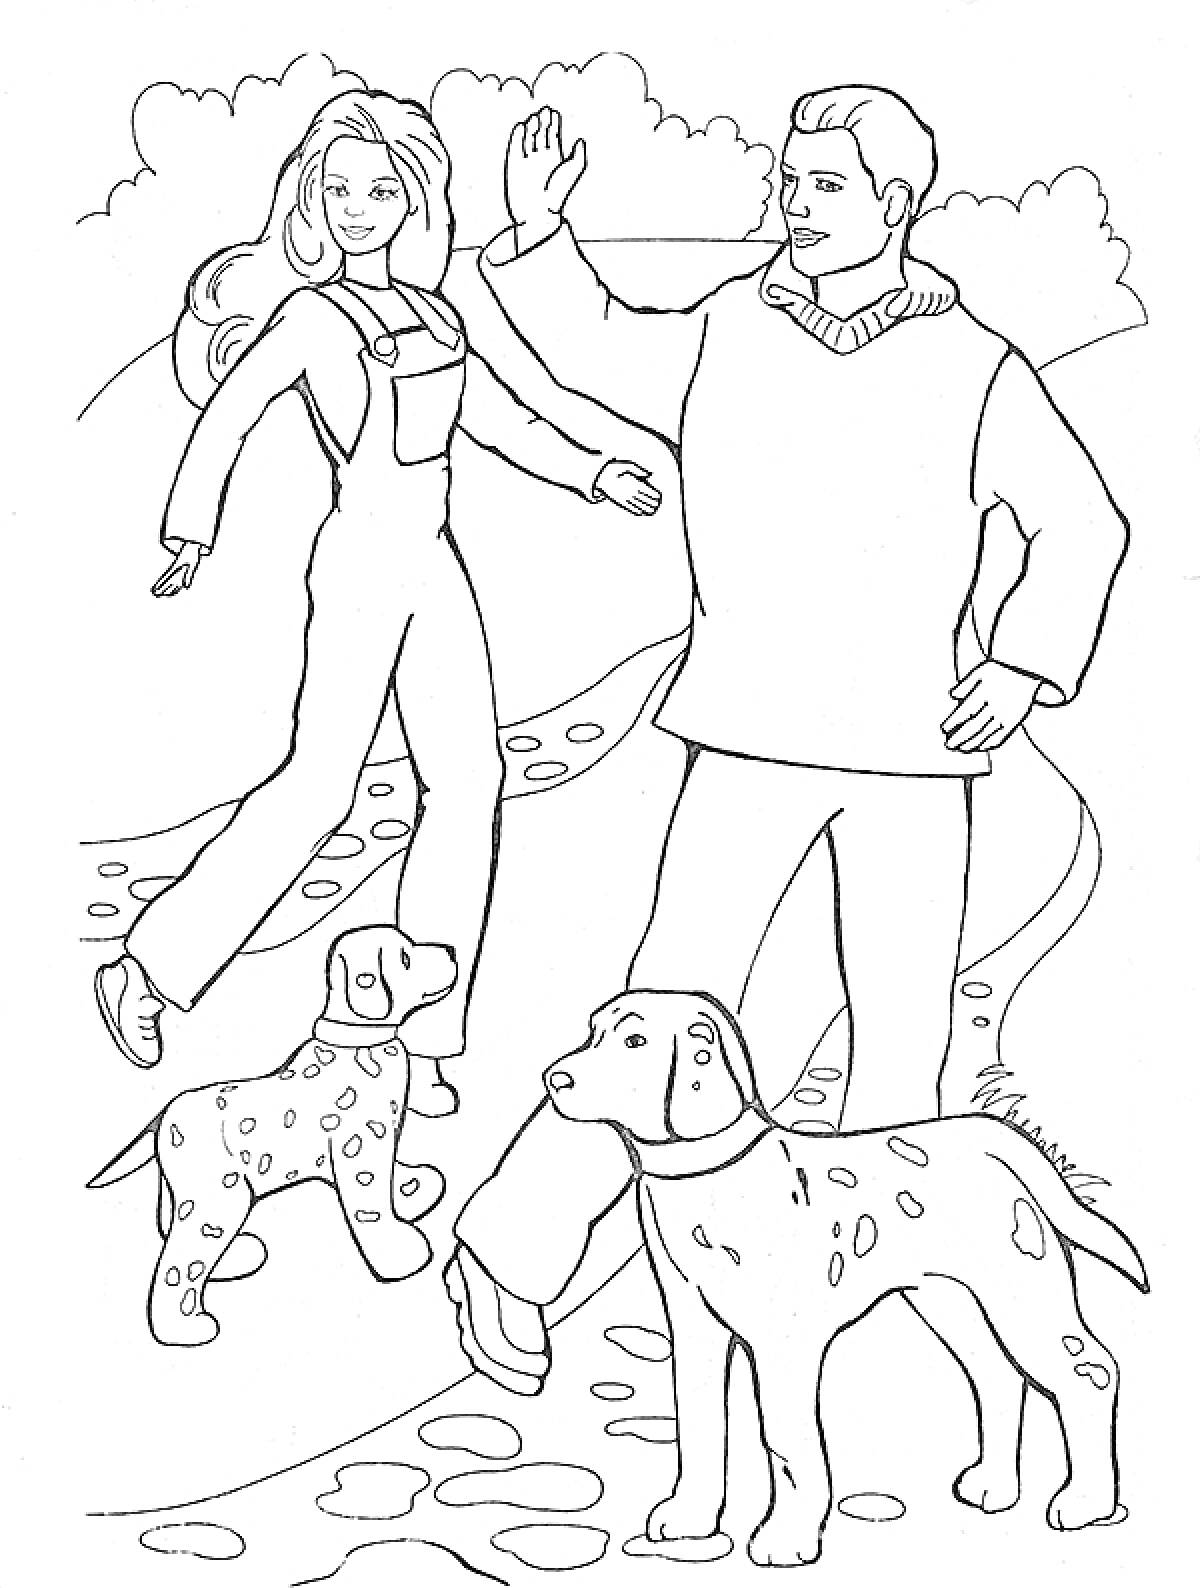 РаскраскаКен и женщина на прогулке с собаками